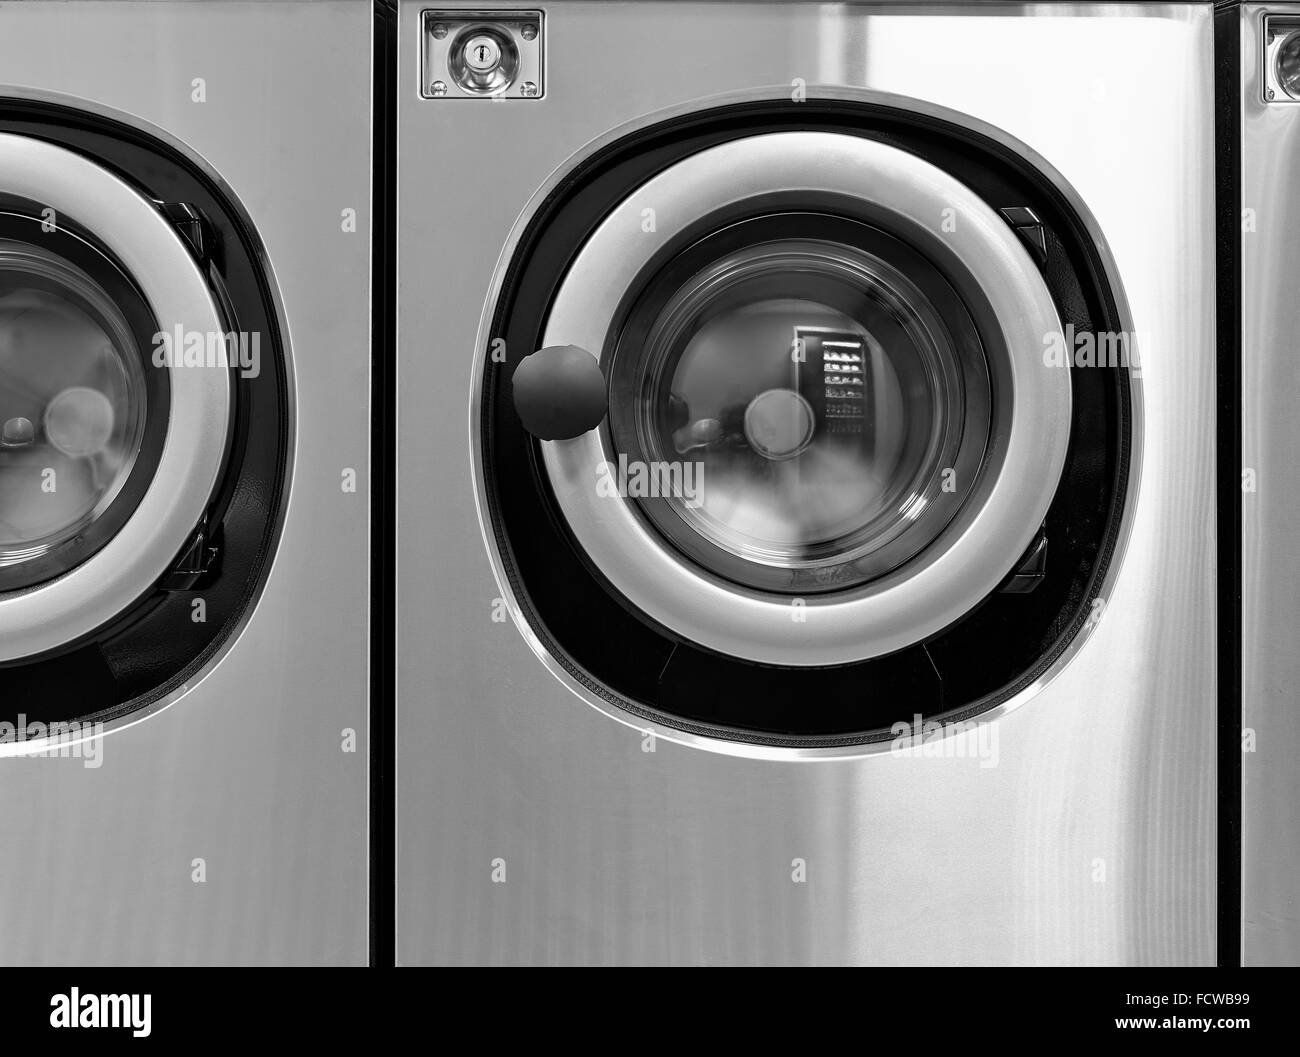 Machines à laver industrielles dans une laverie de l'avant Banque D'Images